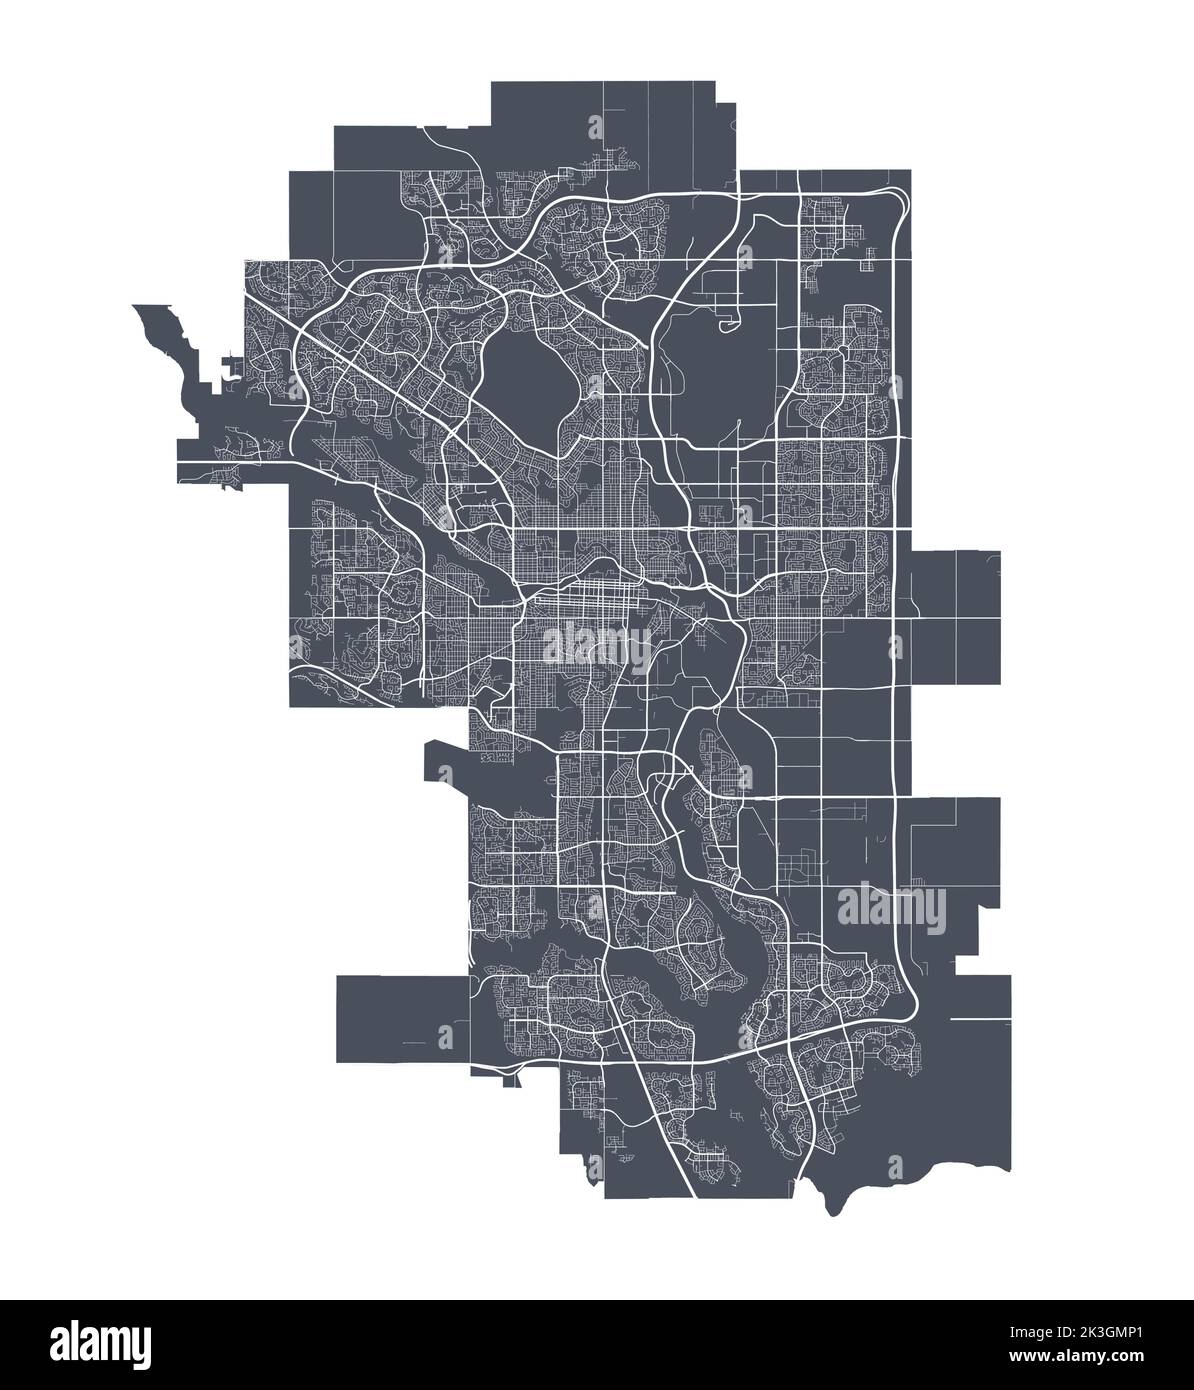 Karte von Calgary. Detaillierte Vektorkarte von Calgary Stadt Verwaltungsgebiet. Stadtbild Poster Metropolregion Arie Ansicht. Stock Vektor